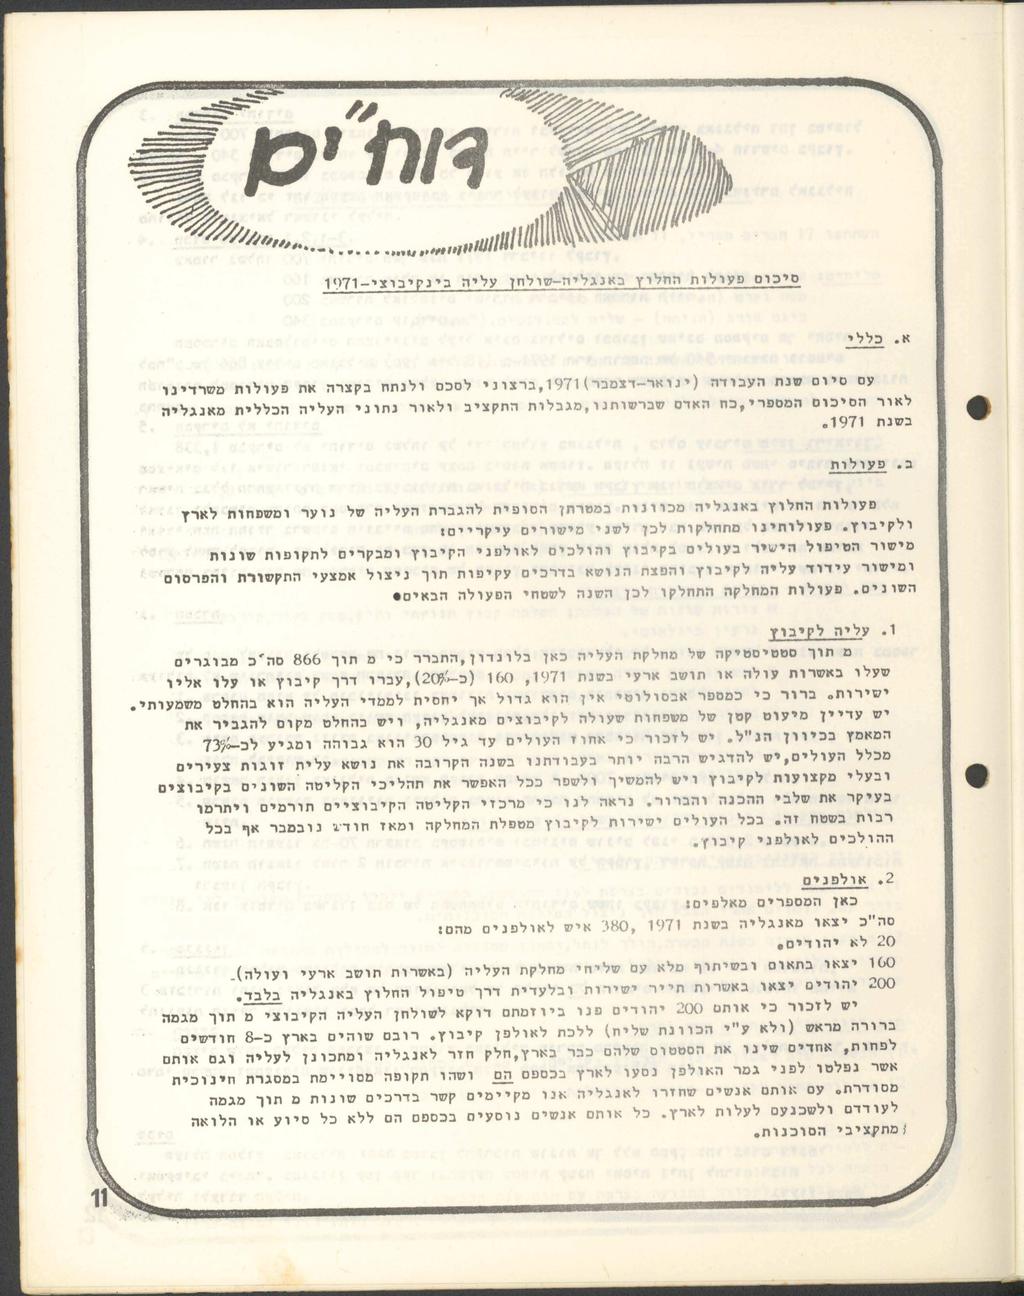 לוו 1971 -יצוביקניב הילע ןחלוש-הילגנאב ץולחה תולועפ םוכיס %ללכ.